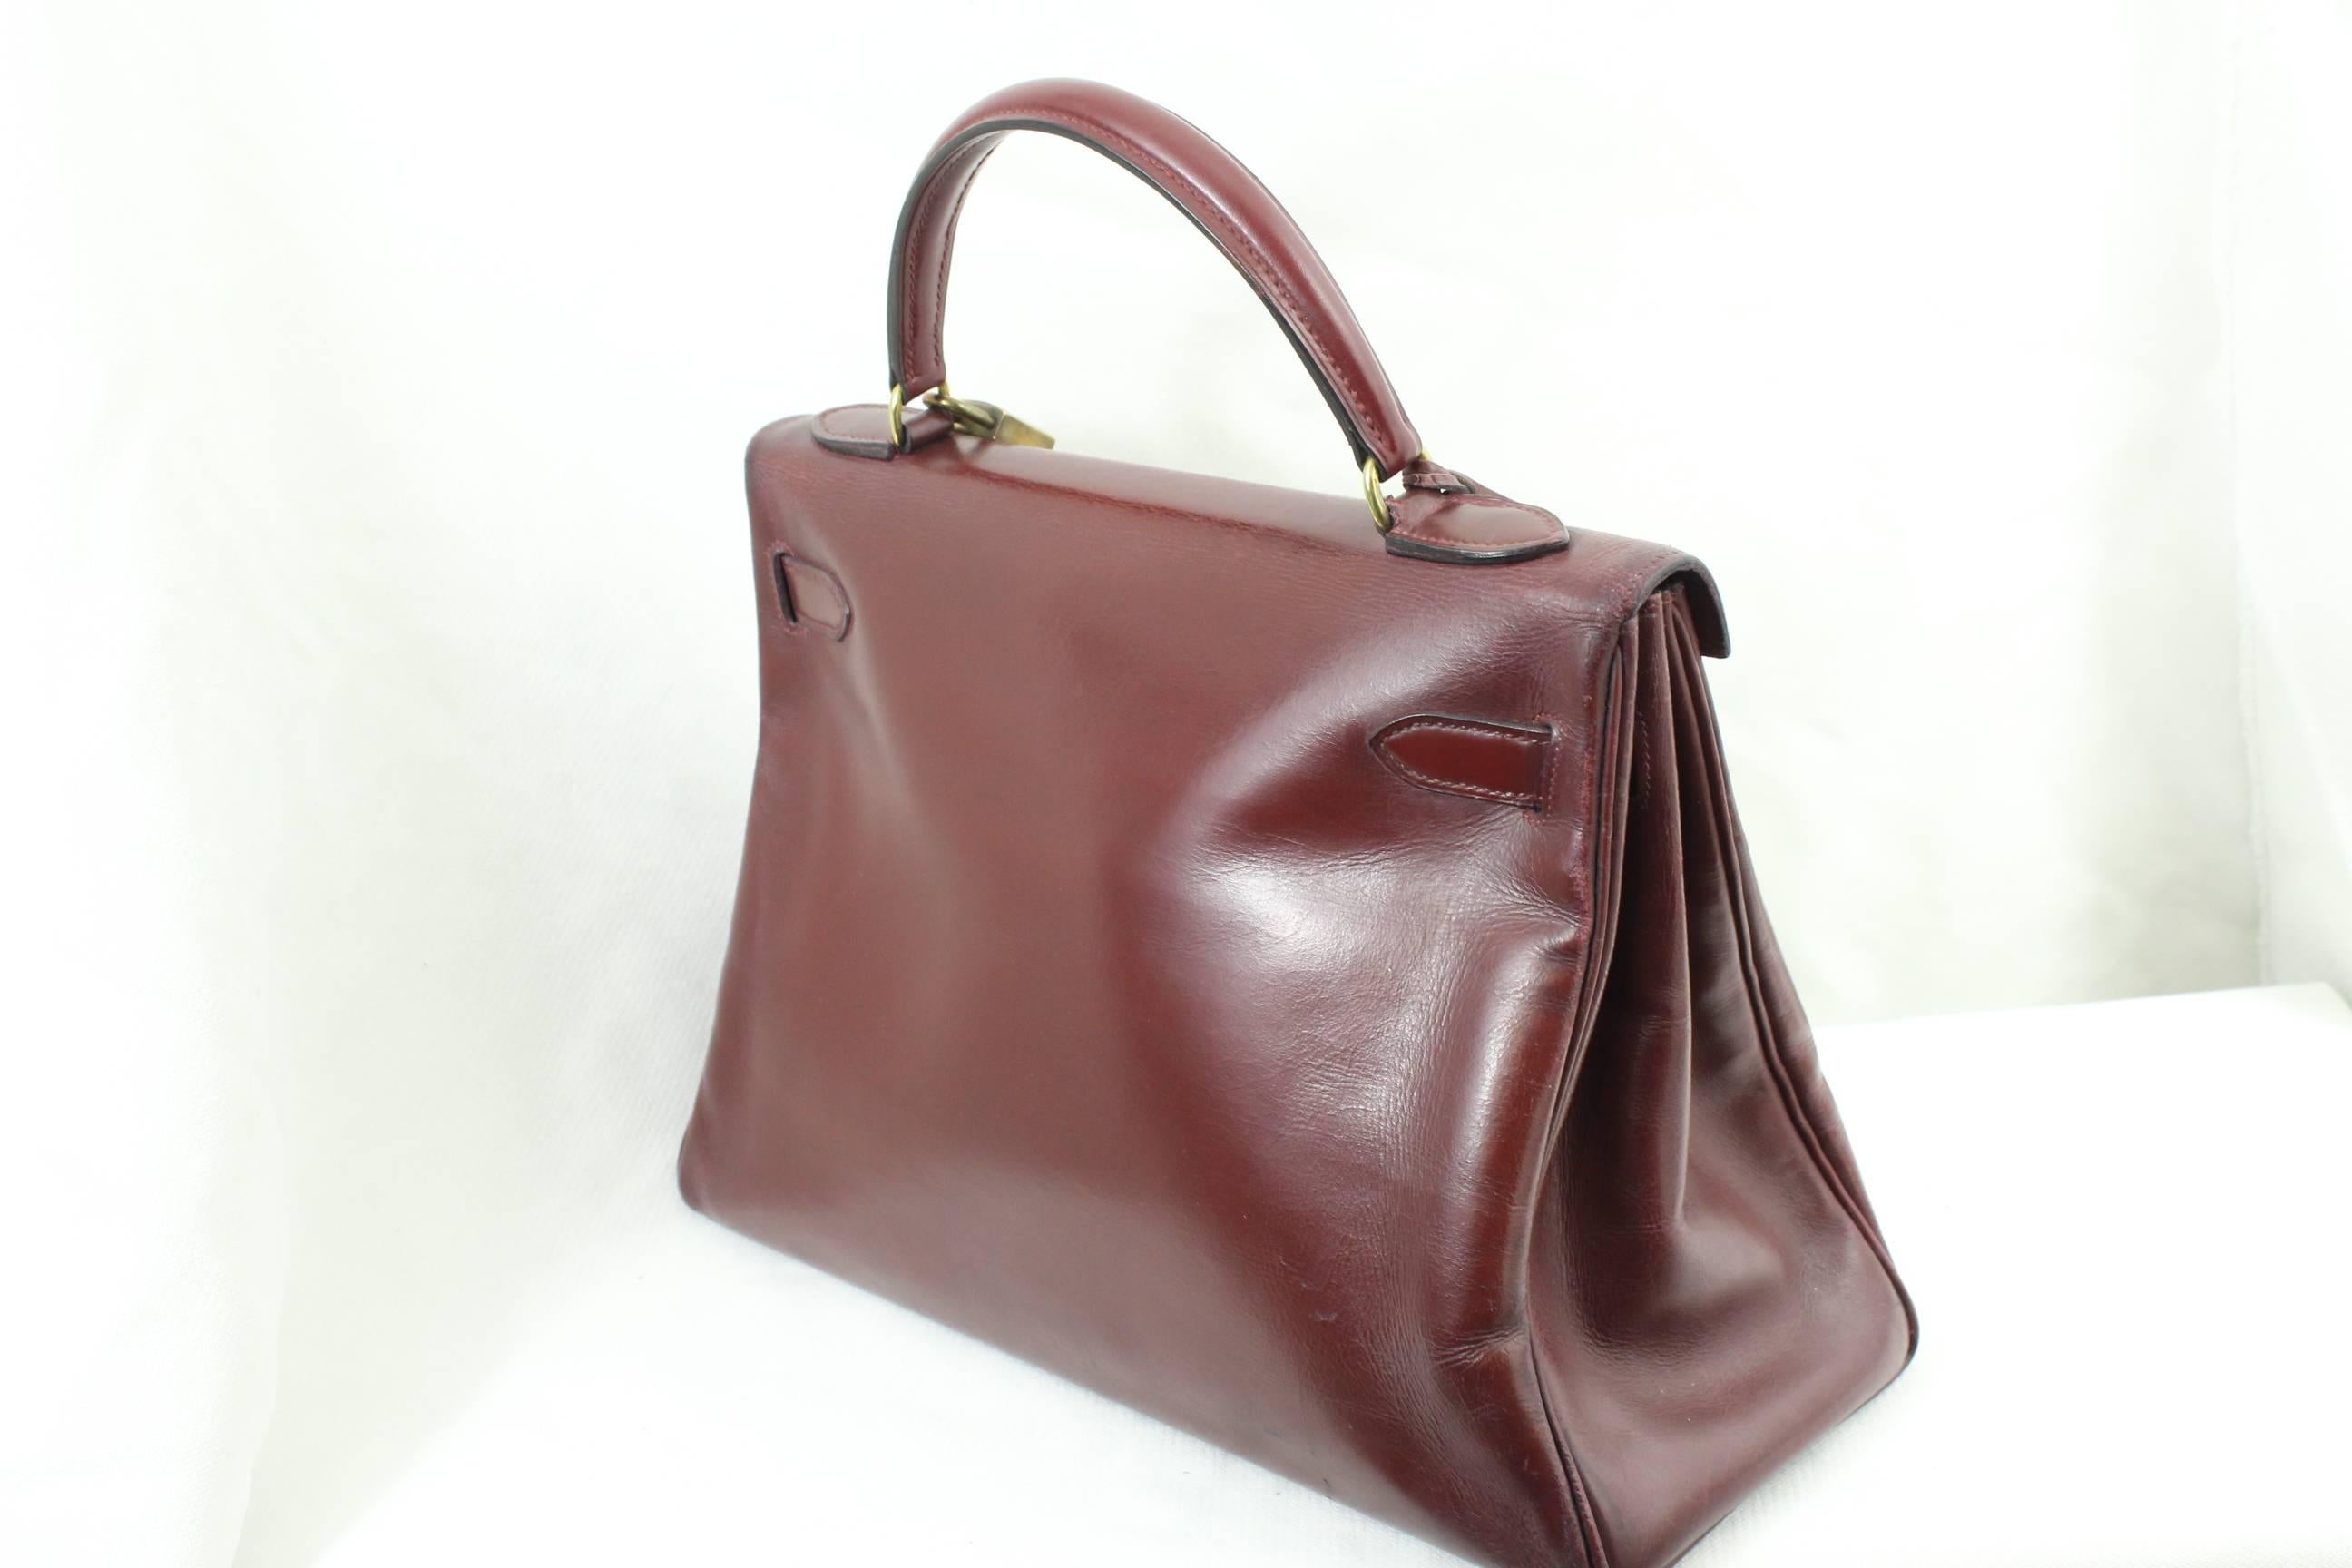 1960 Hermes Vintage Kelly Bag in Burgundy Leather with Golden Hardware 1